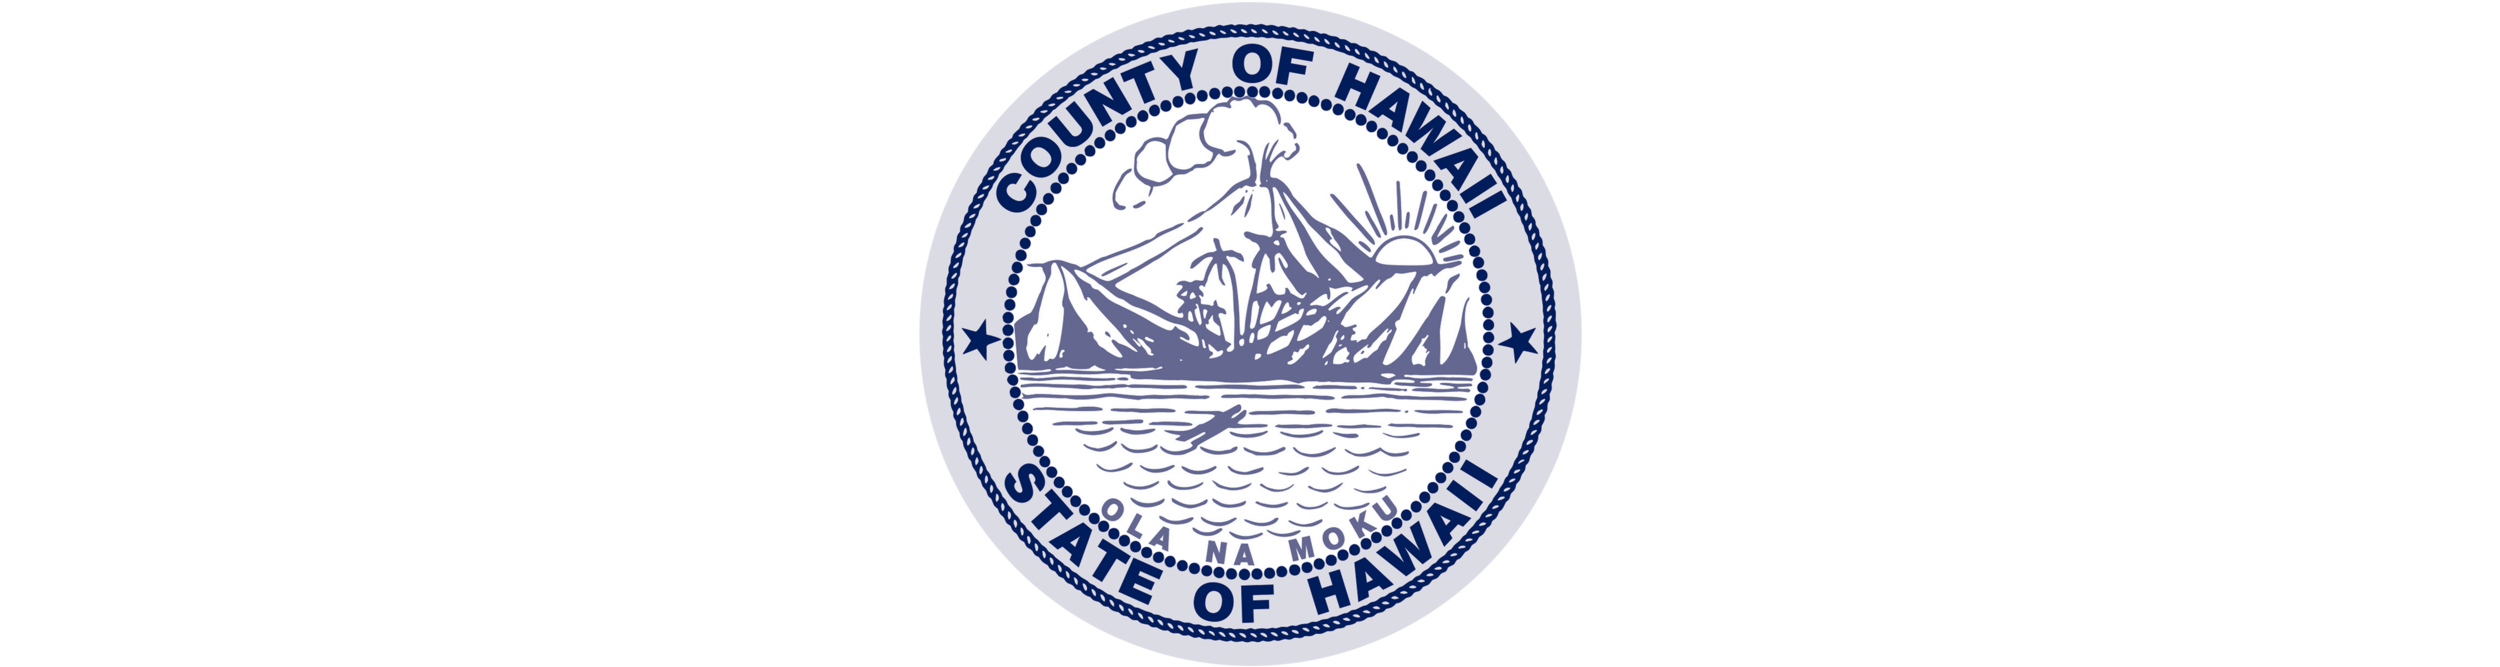 HPHA-ресурсы-лого-Гавайи-Каунти.пнг